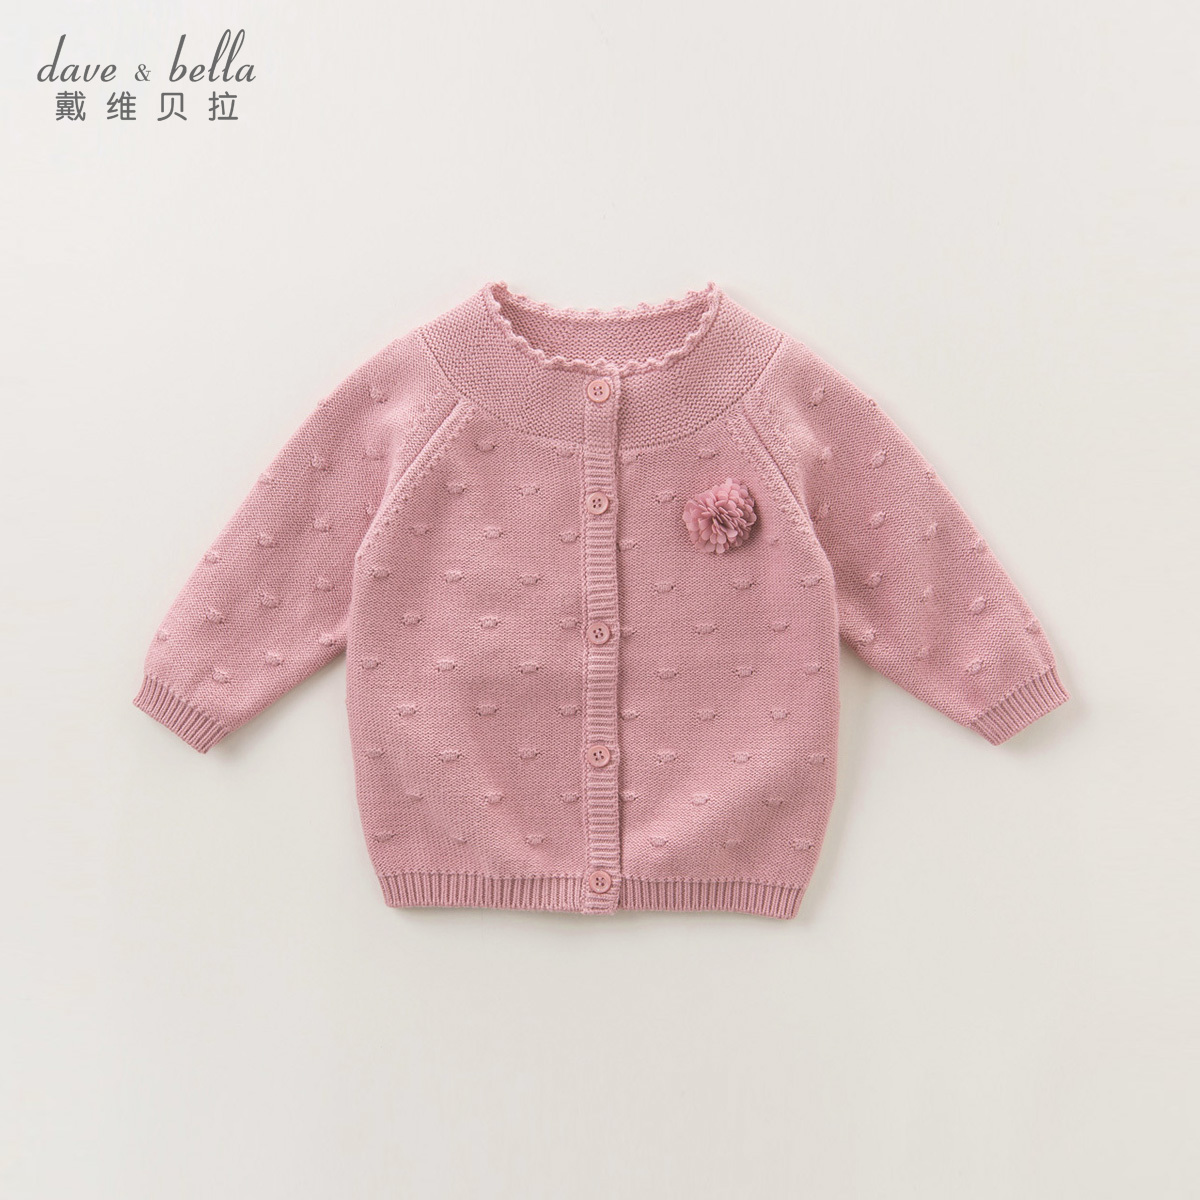 婴儿毛衣纯手工编织女宝宝开衫外套外出服粉色黄色二件套装1111